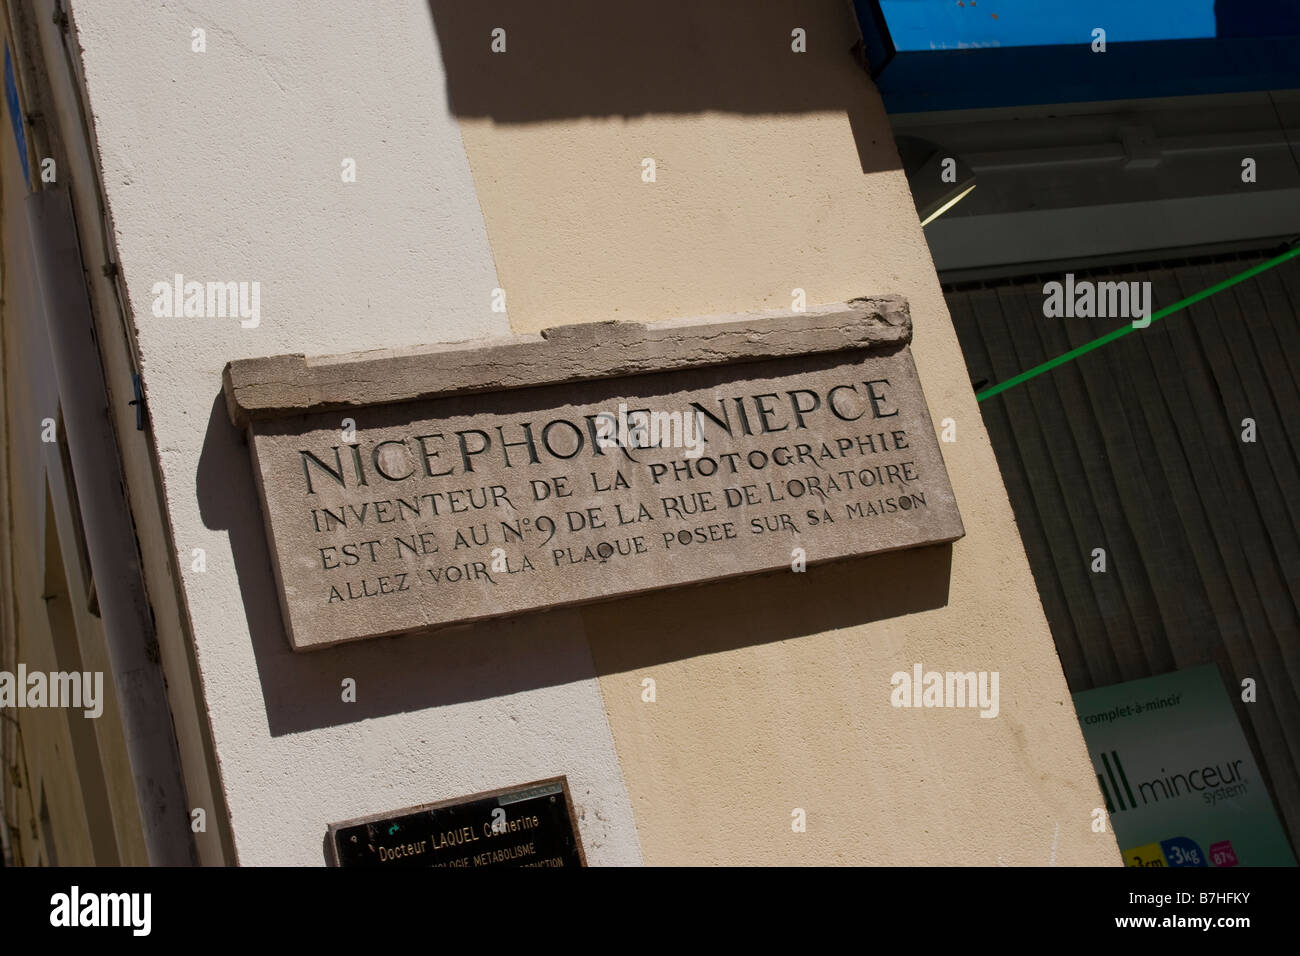 Nicephore Niepce inventeur de la Photographie, Chalon sur Saone Burgandy France EU. Stock Photo